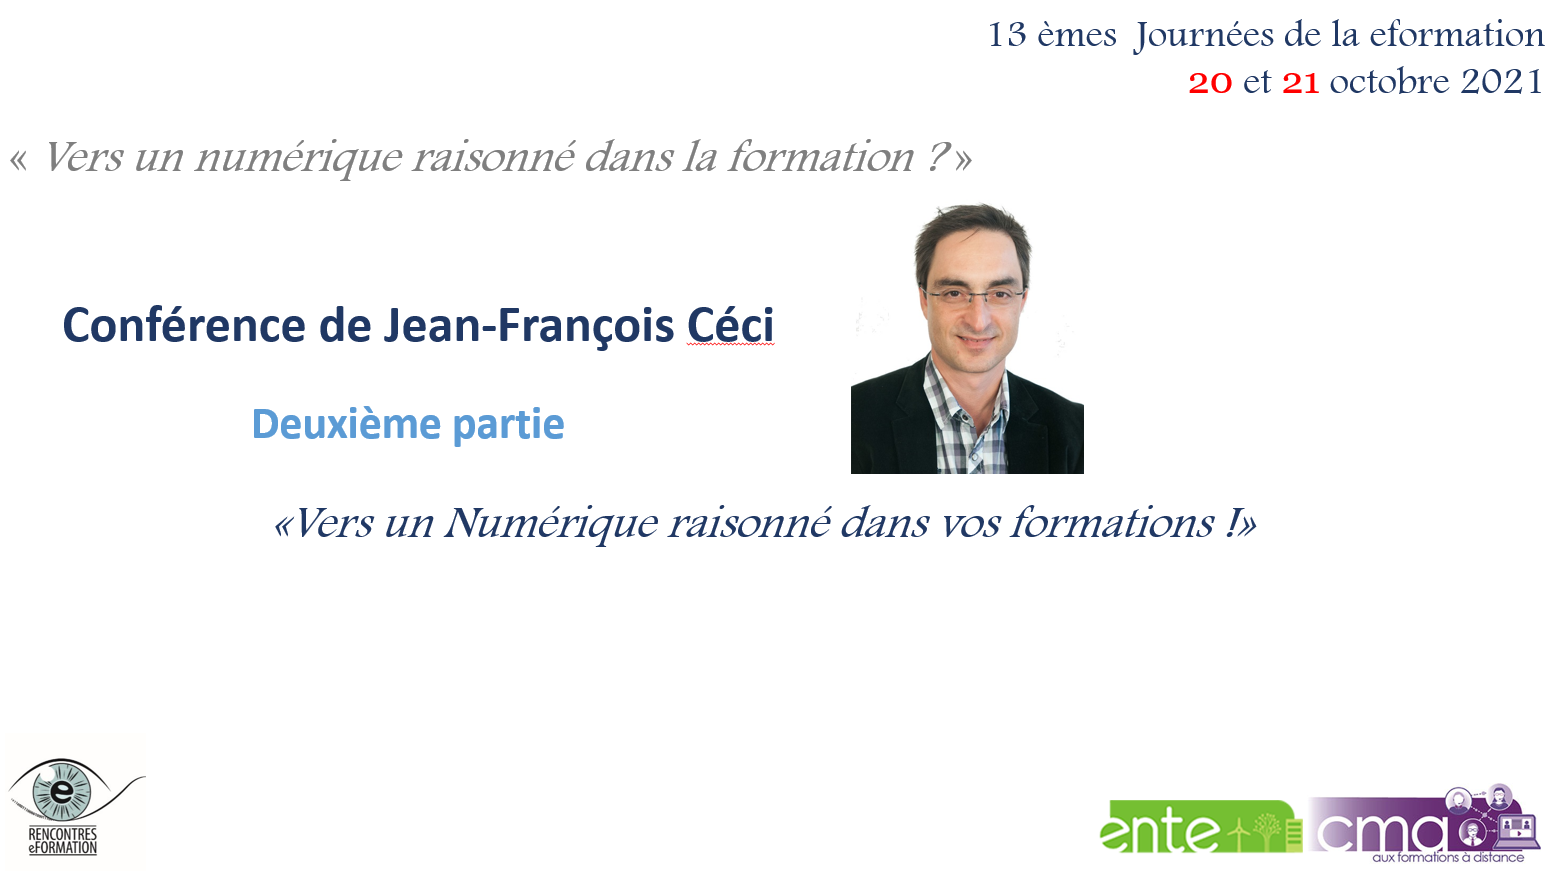 Conférence de Jean-François Céci "Vers un numérique raisonné dans vos formations !" Deuxième partie